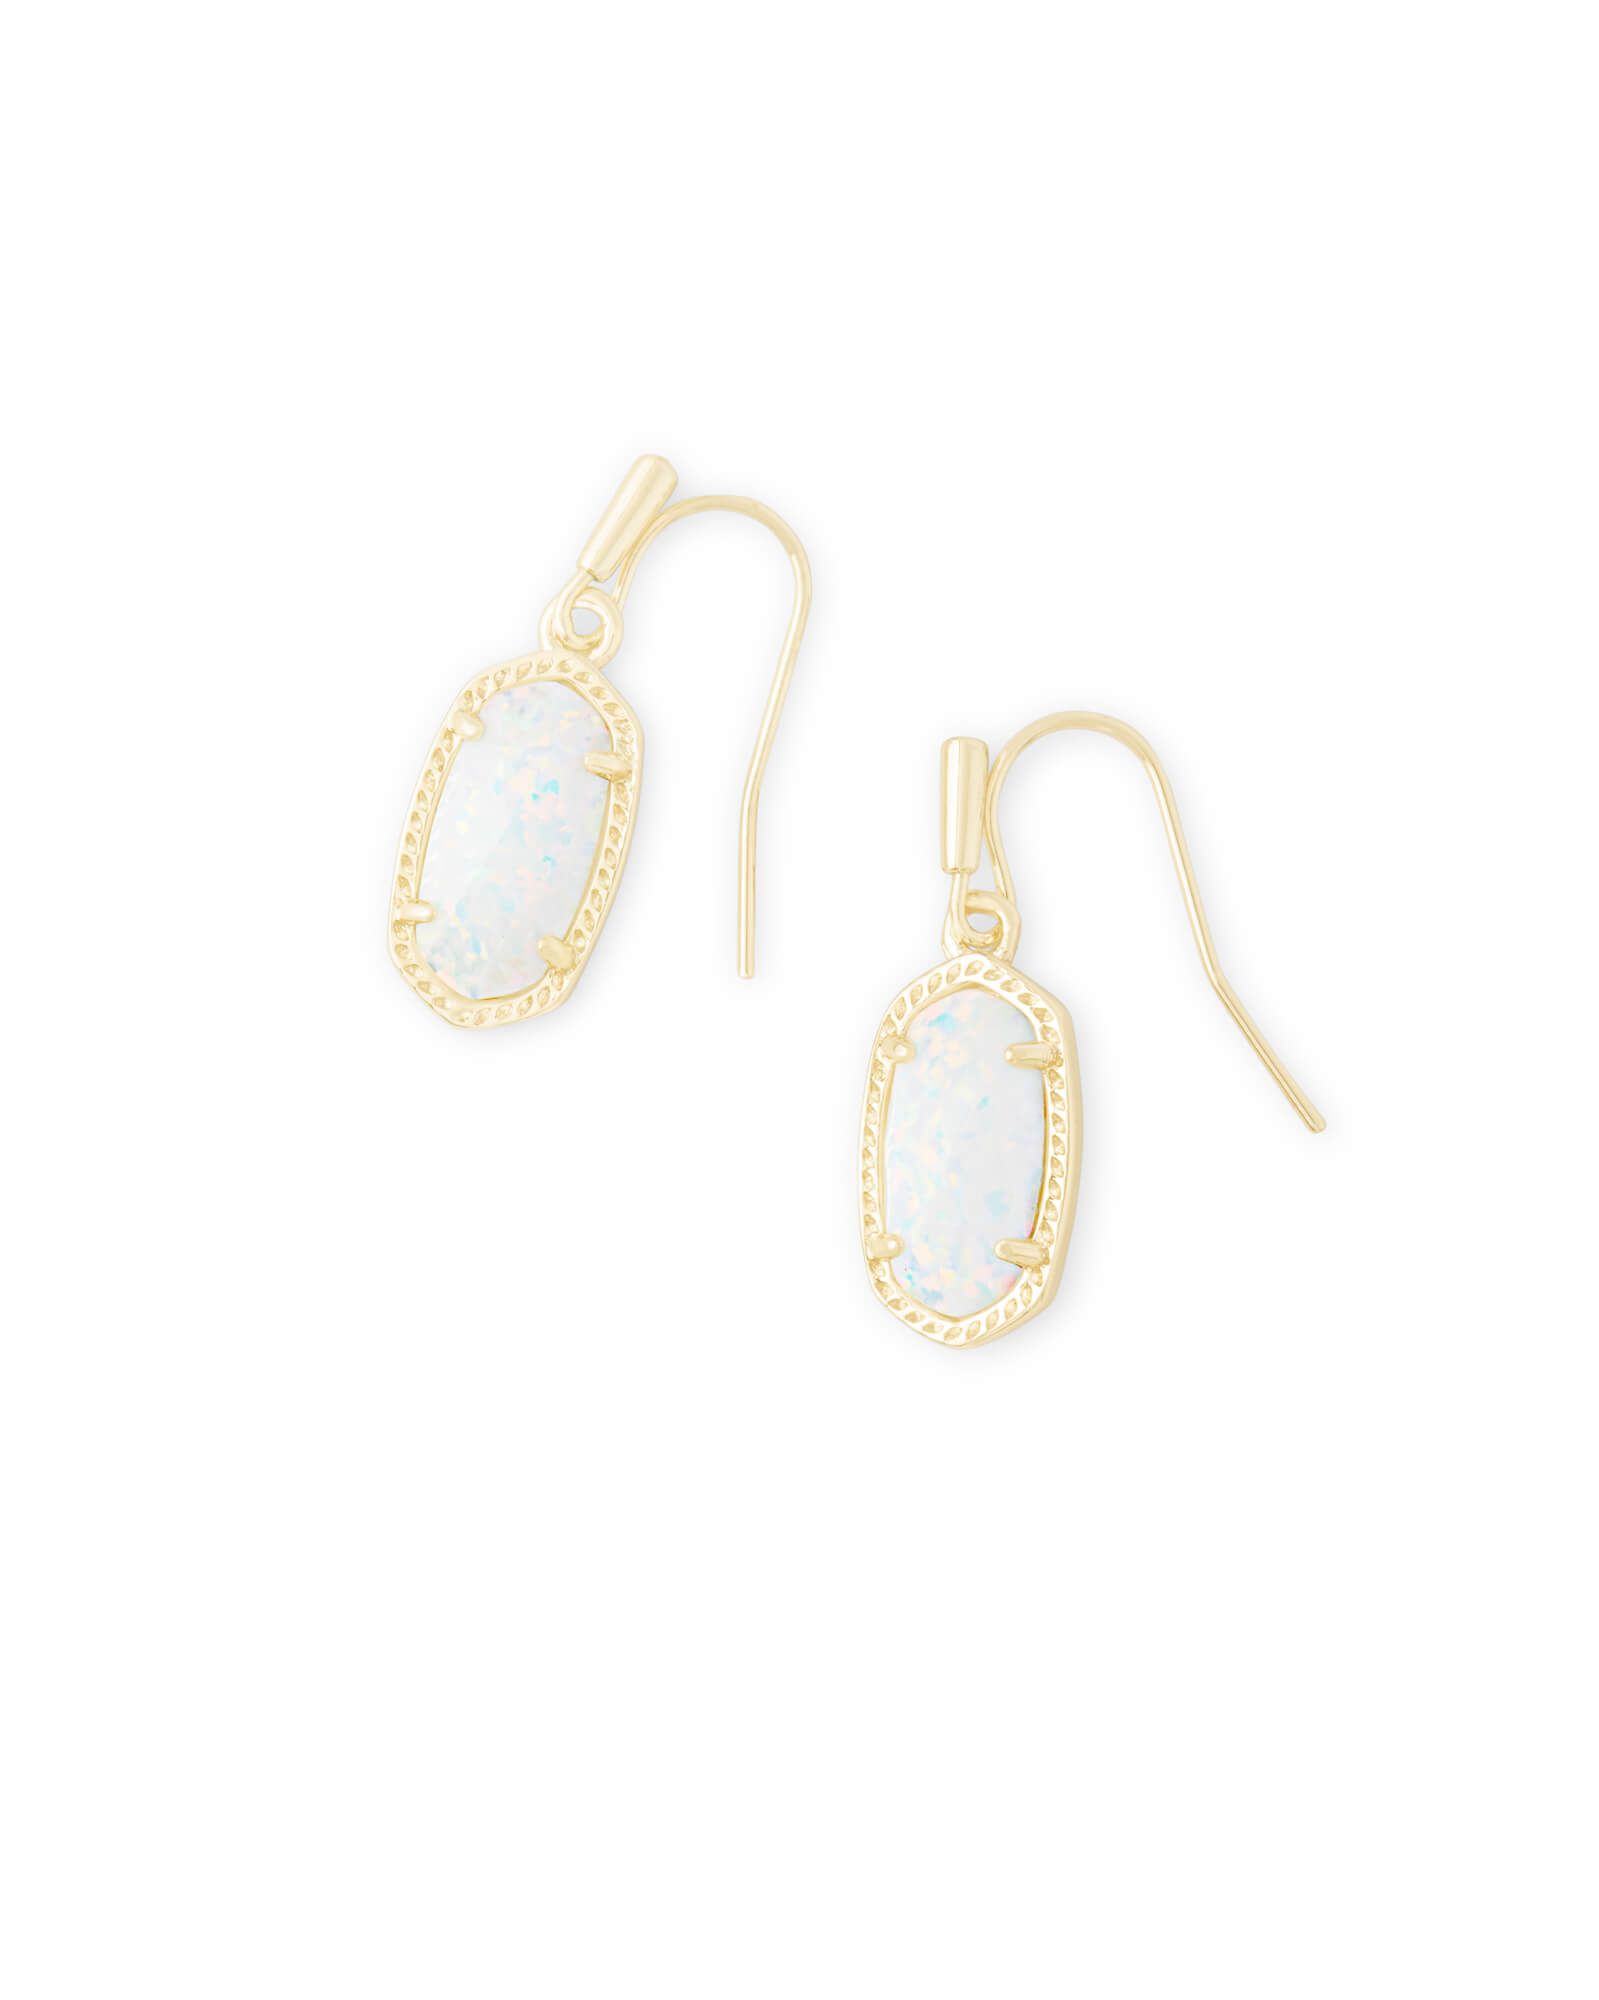 Lee Gold Drop Earrings in White Kyocera Opal | Kendra Scott | Kendra Scott